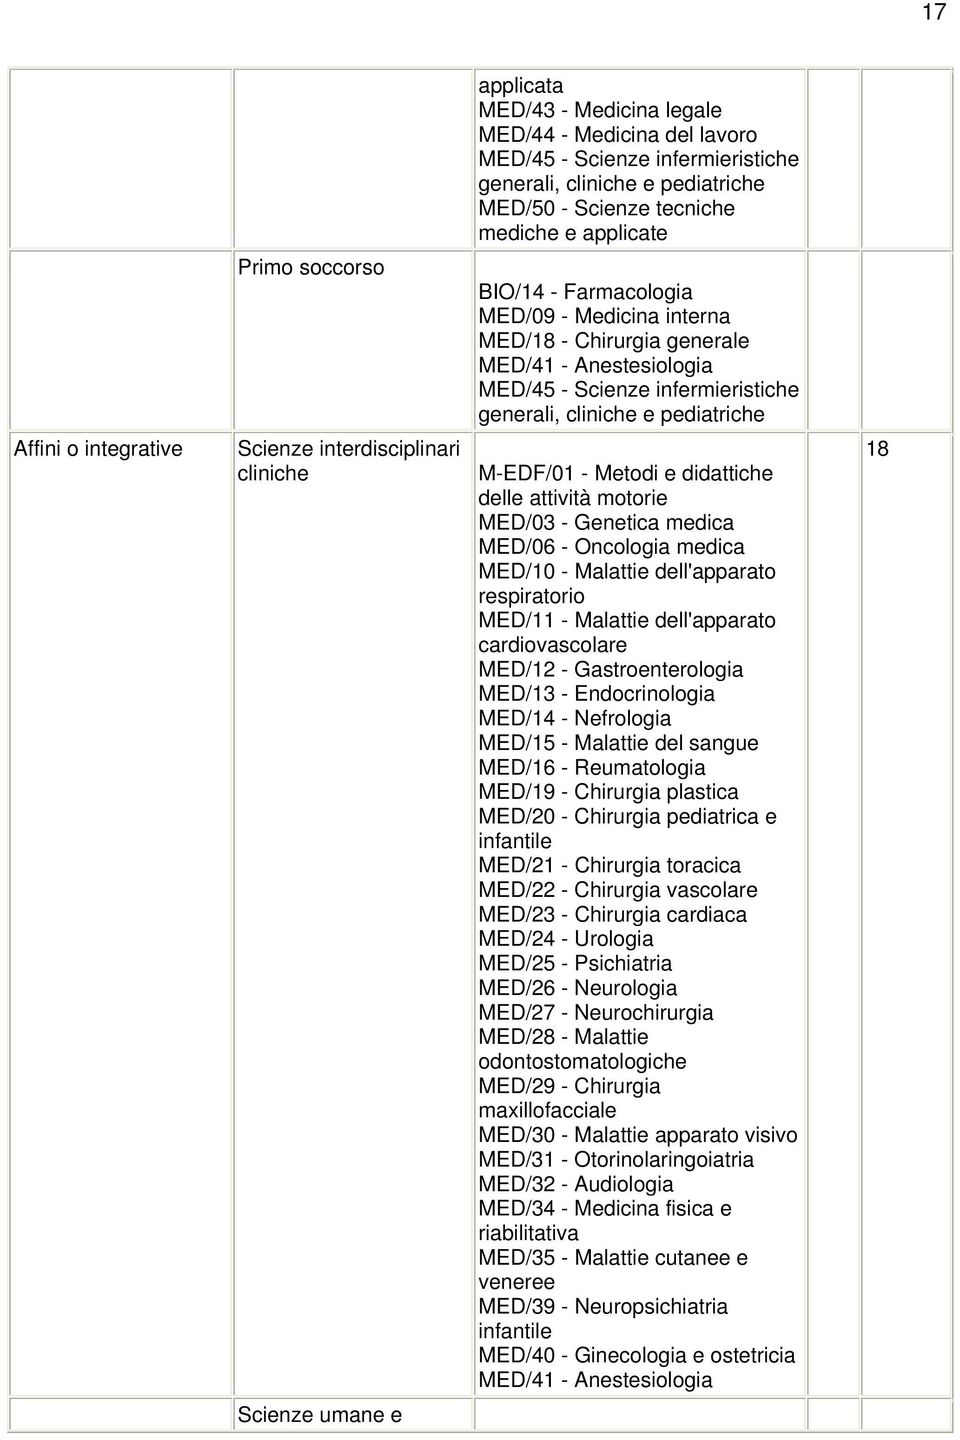 M-EDF/01 - Metodi e didattiche delle attività motorie MED/03 - Genetica medica MED/06 - Oncologia medica MED/10 - Malattie dell'apparato respiratorio MED/11 - Malattie dell'apparato cardiovascolare